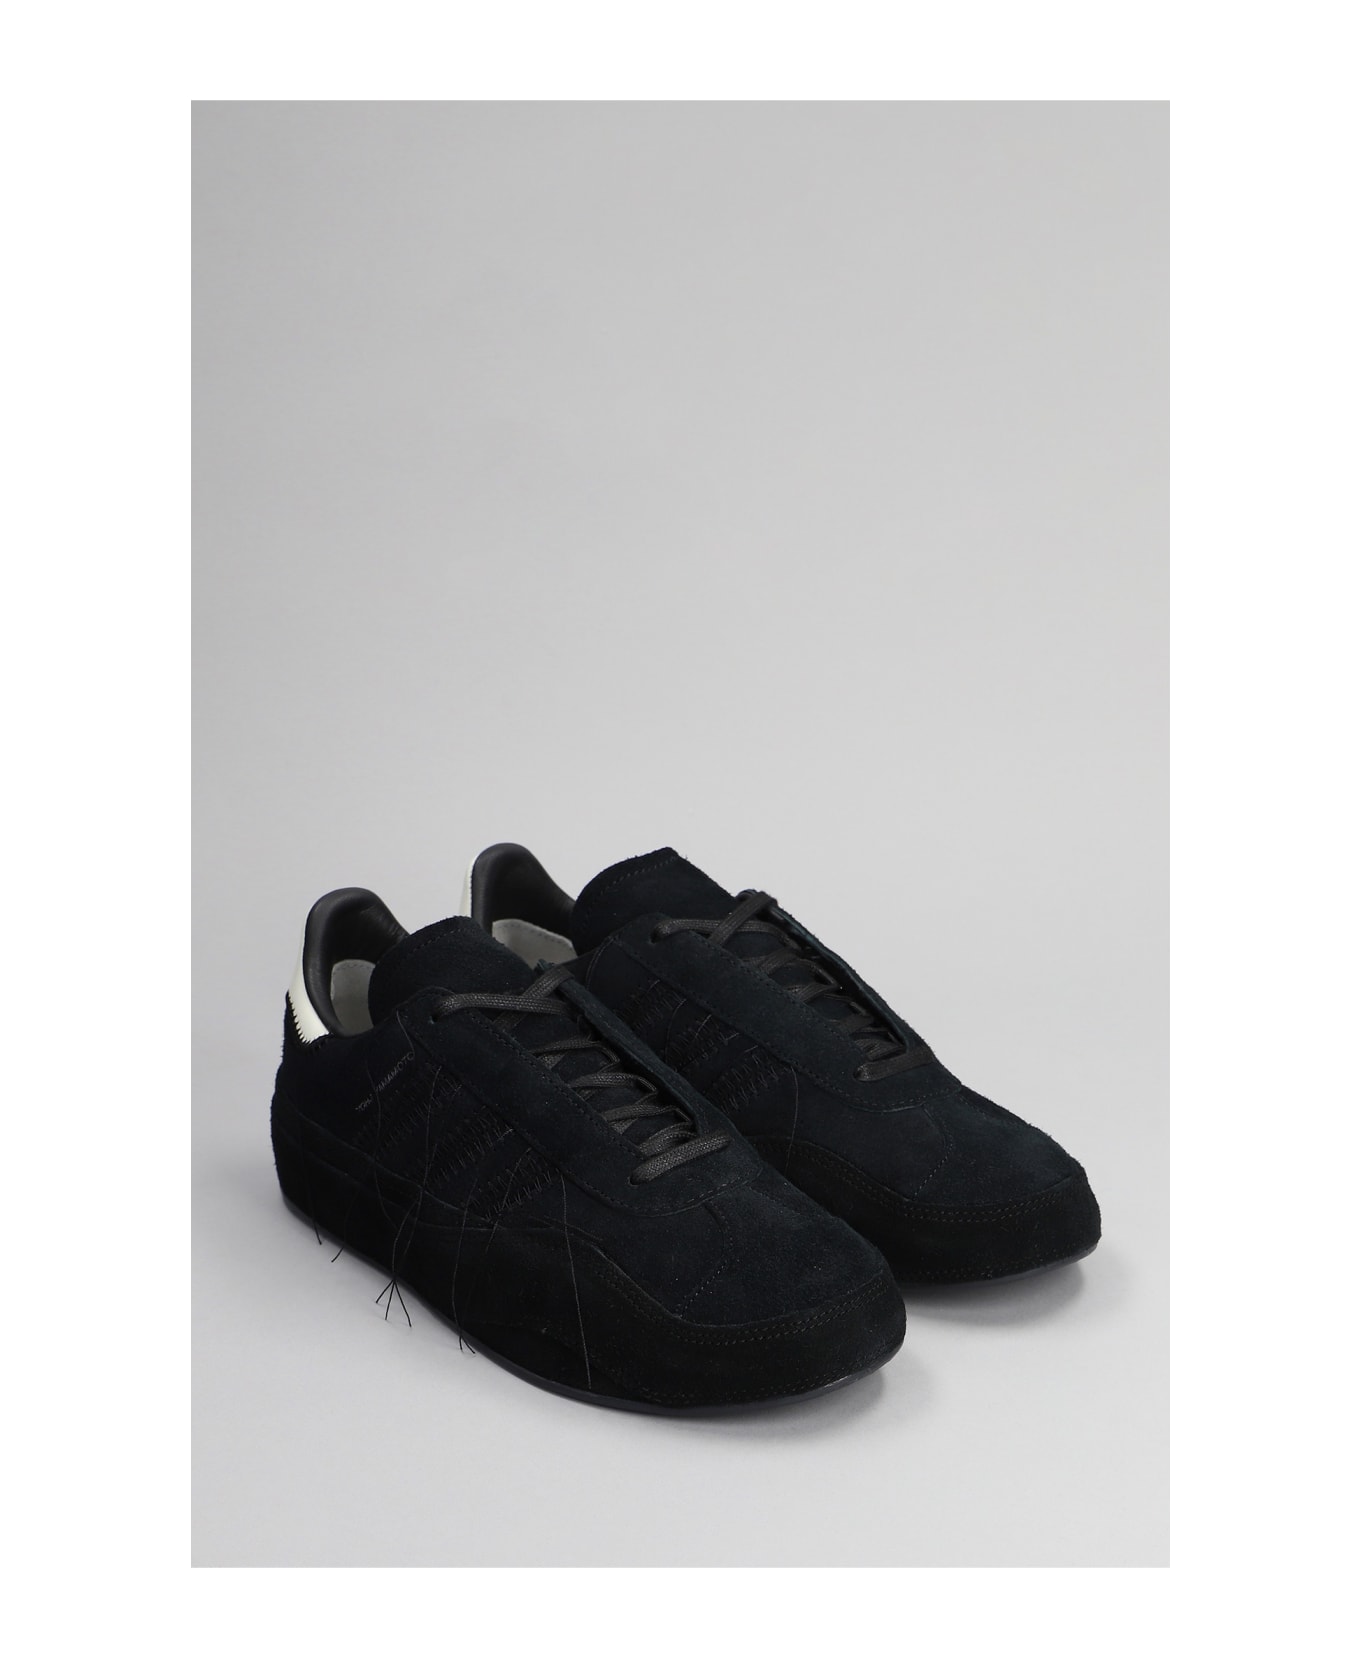 Y-3 Gazelle Sneakers In Black Suede - Black スニーカー